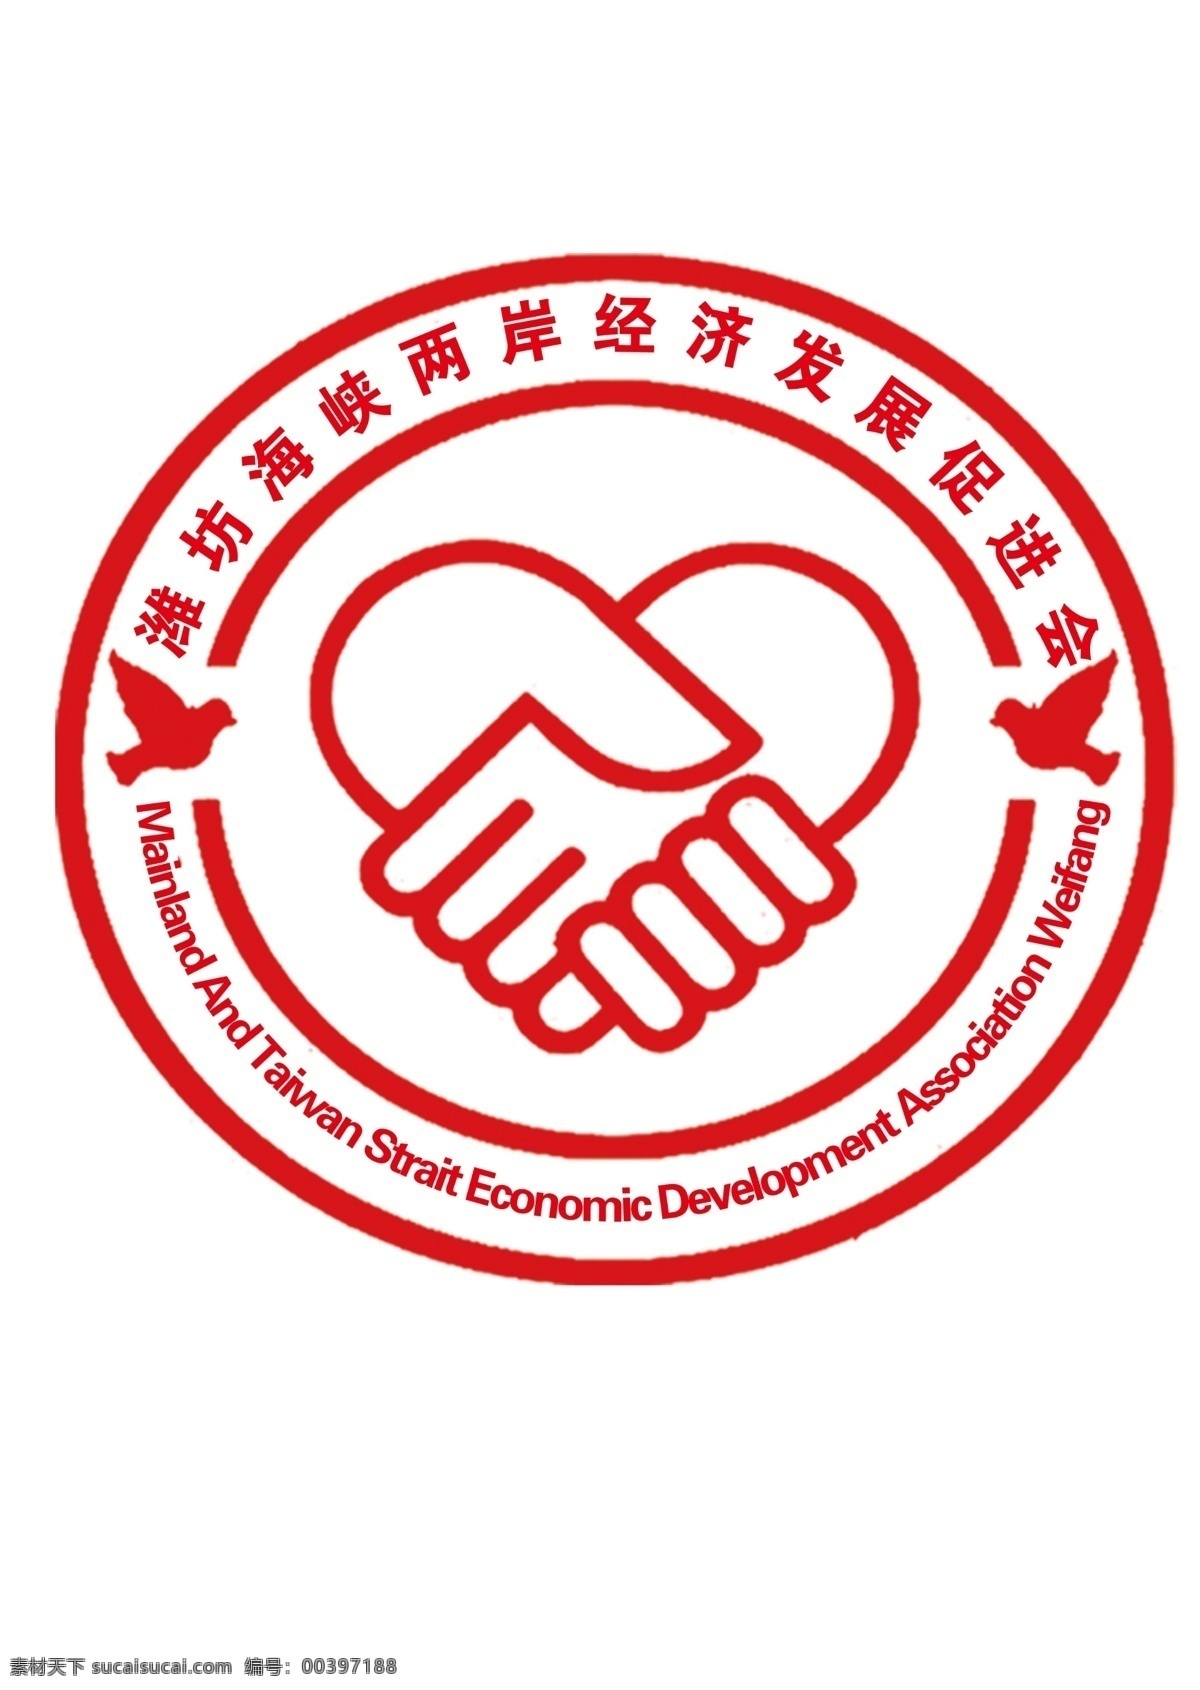 潍坊 海峡两岸 经济发展 促进会 logo 章印 握手logo logo设计